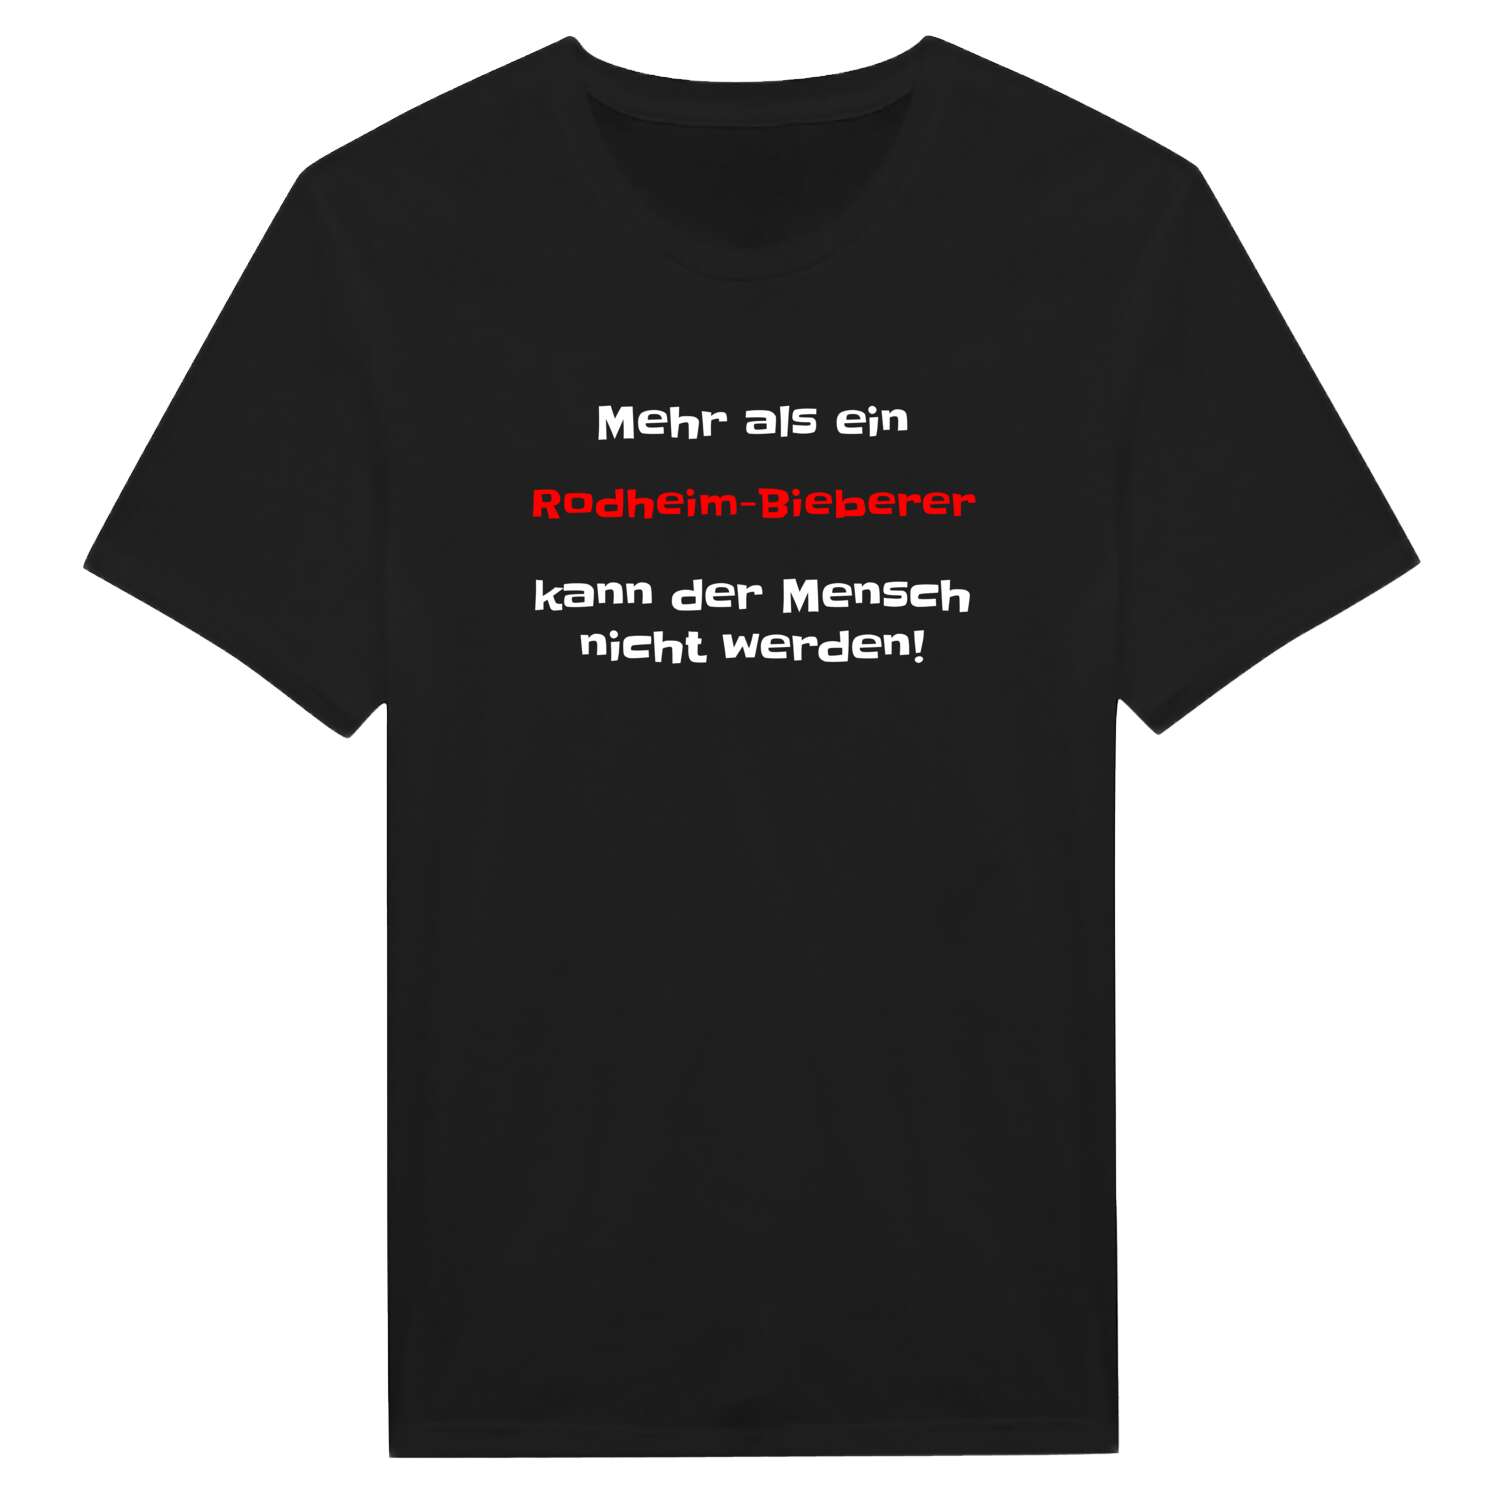 Rodheim-Bieber T-Shirt »Mehr als ein«